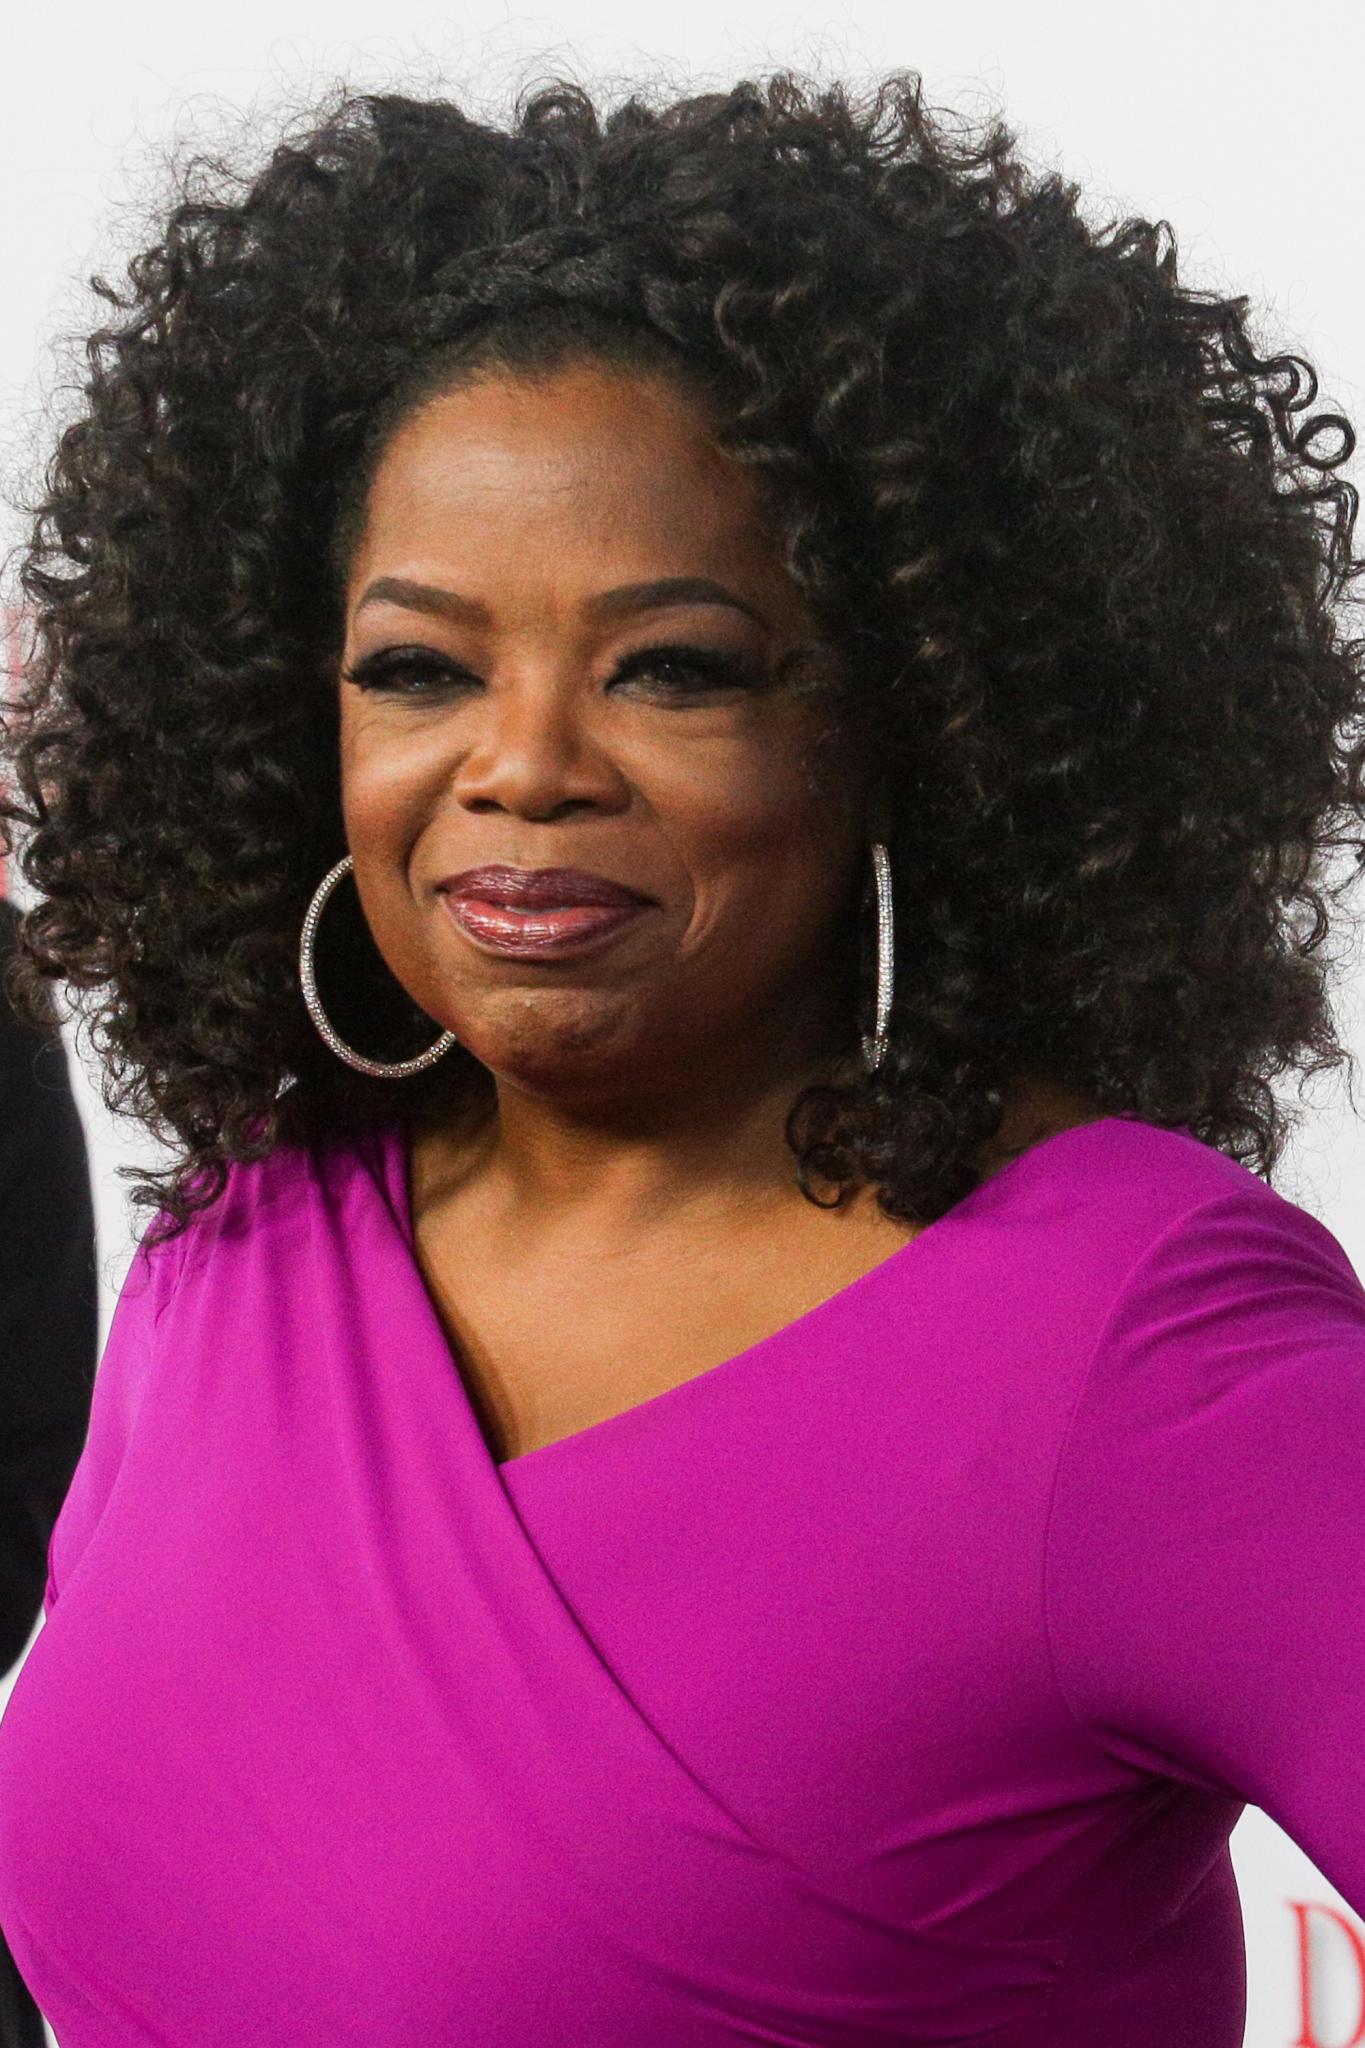 Oprah on Her Oscar Snub: 'I Already Won'
